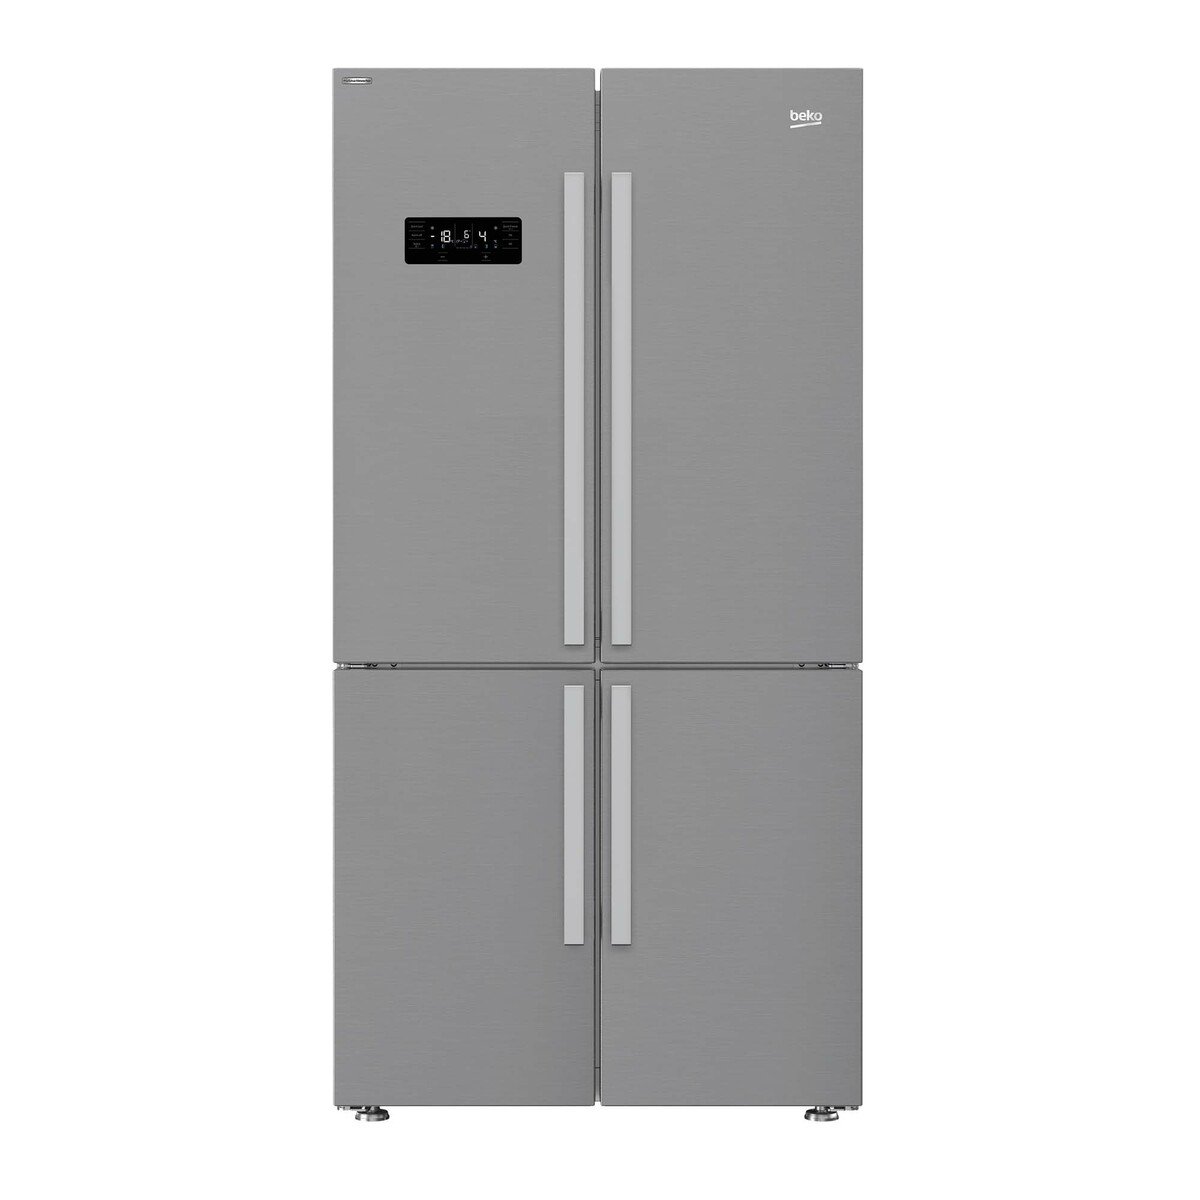 Beko French Door Refrigerator GN1416221ZX 626LTR